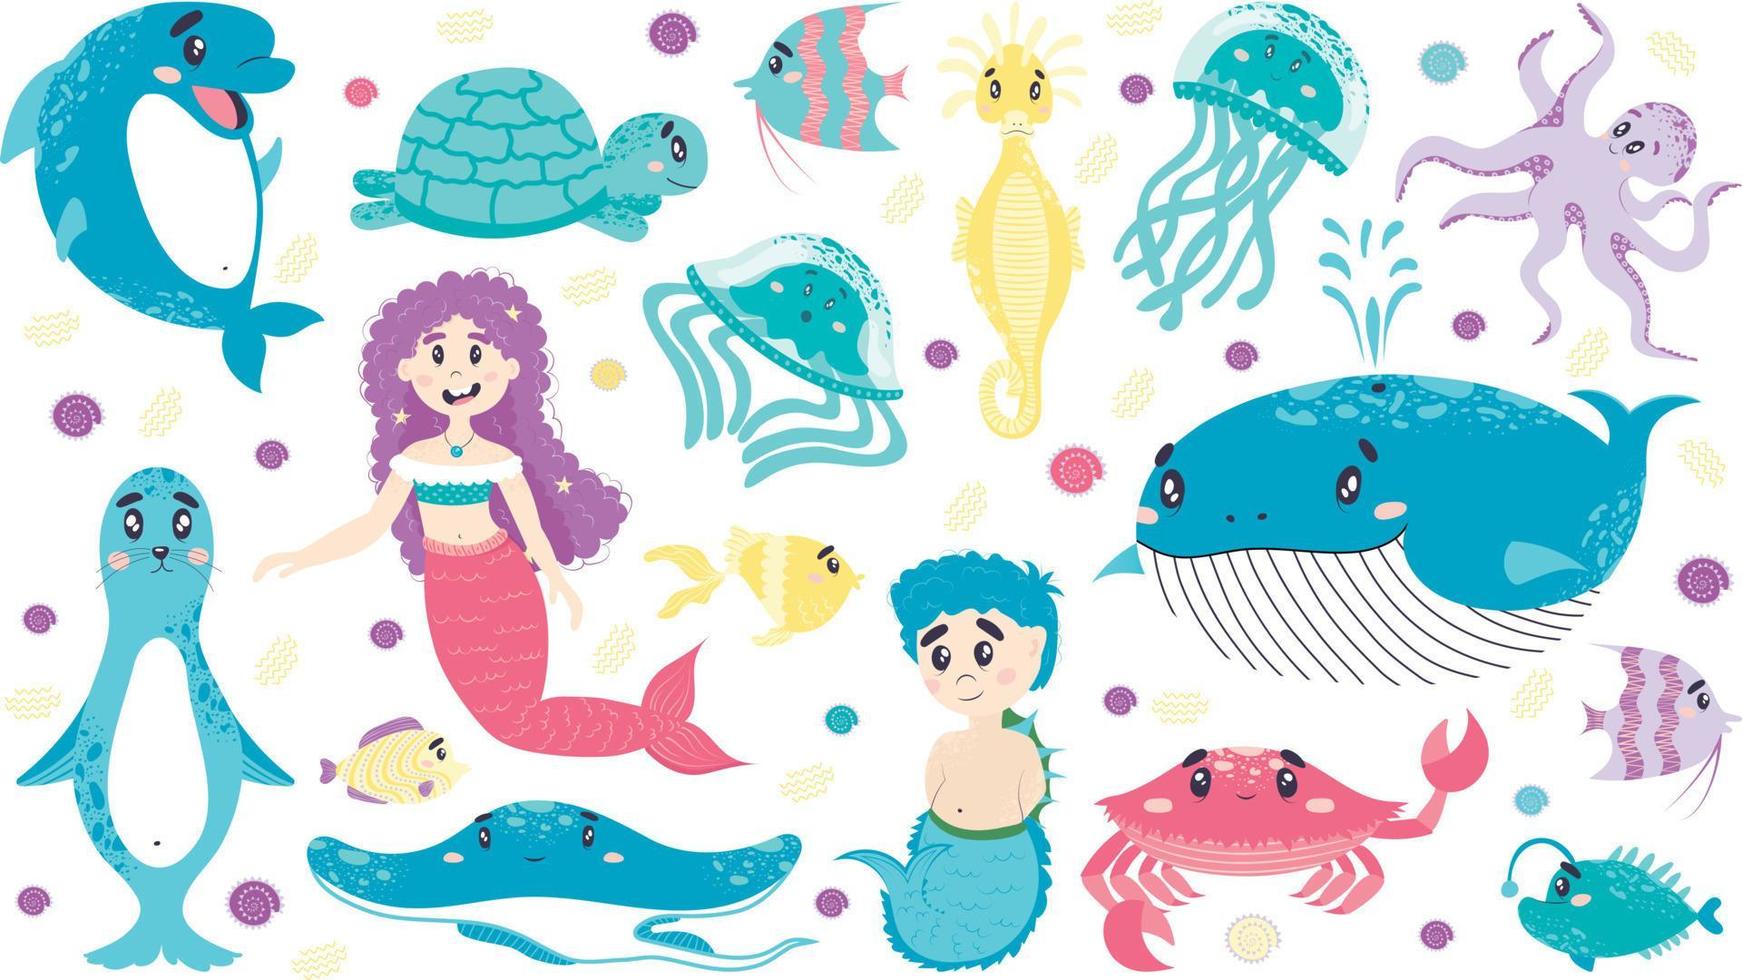 ensemble de créatures marines, sirène, triton, baleine, dauphin, méduse, poisson, phoque, hippocampe, tortue, poulpe, crabe, raie. style plat de dessin animé, monde sous-marin, chambre d'enfants vecteur